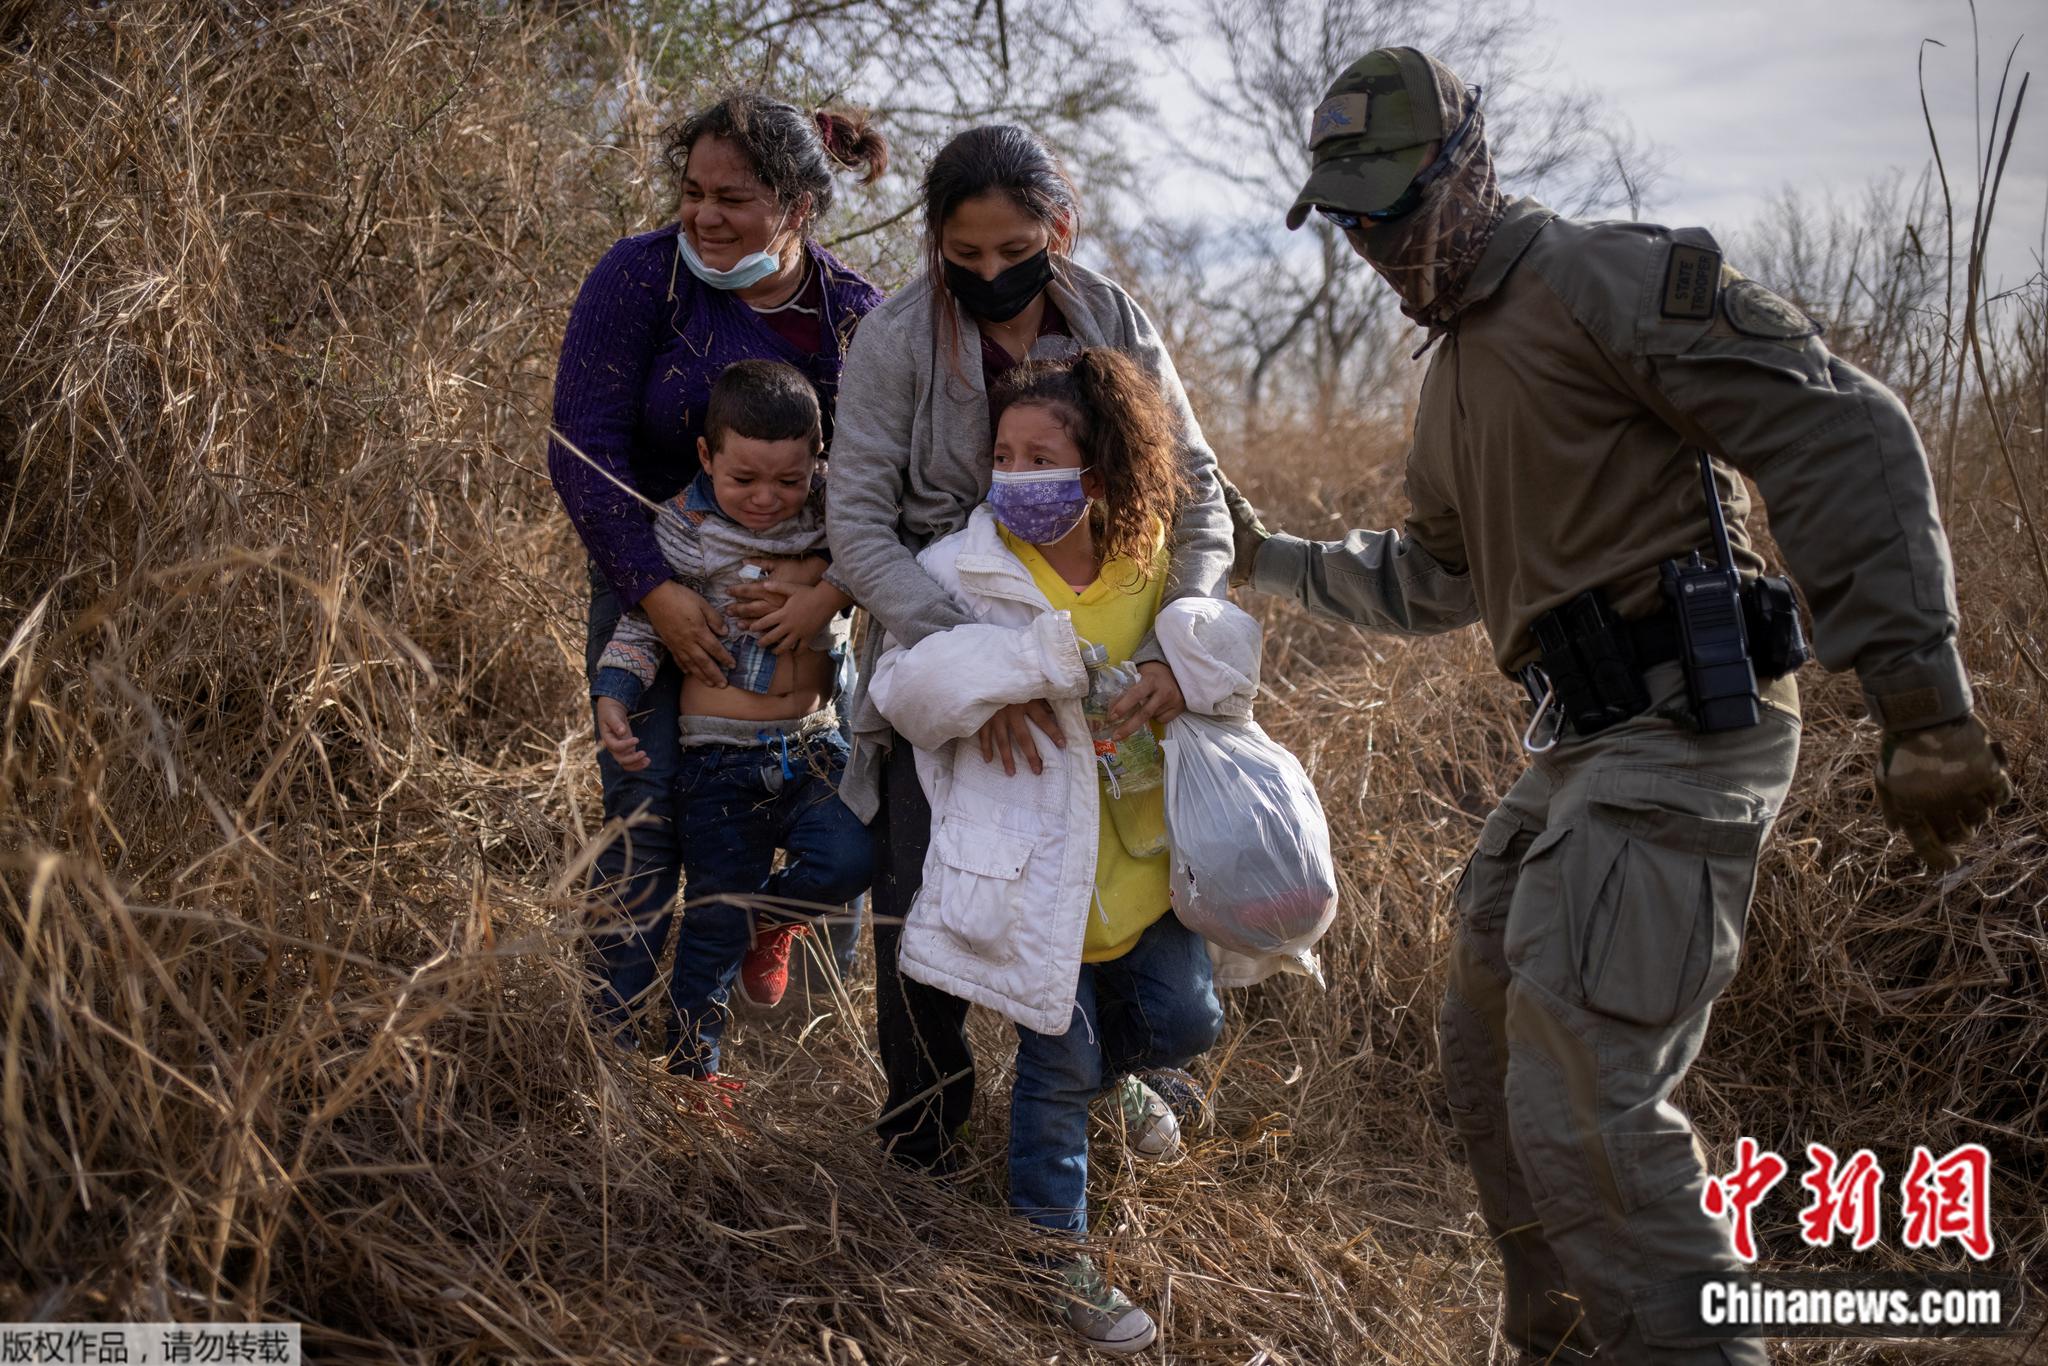 在美国得州里奥格兰德，边境执法者要求躲在灌木丛中的非法移民家庭走出来，以便将他们戴上手铐逮捕并转移。